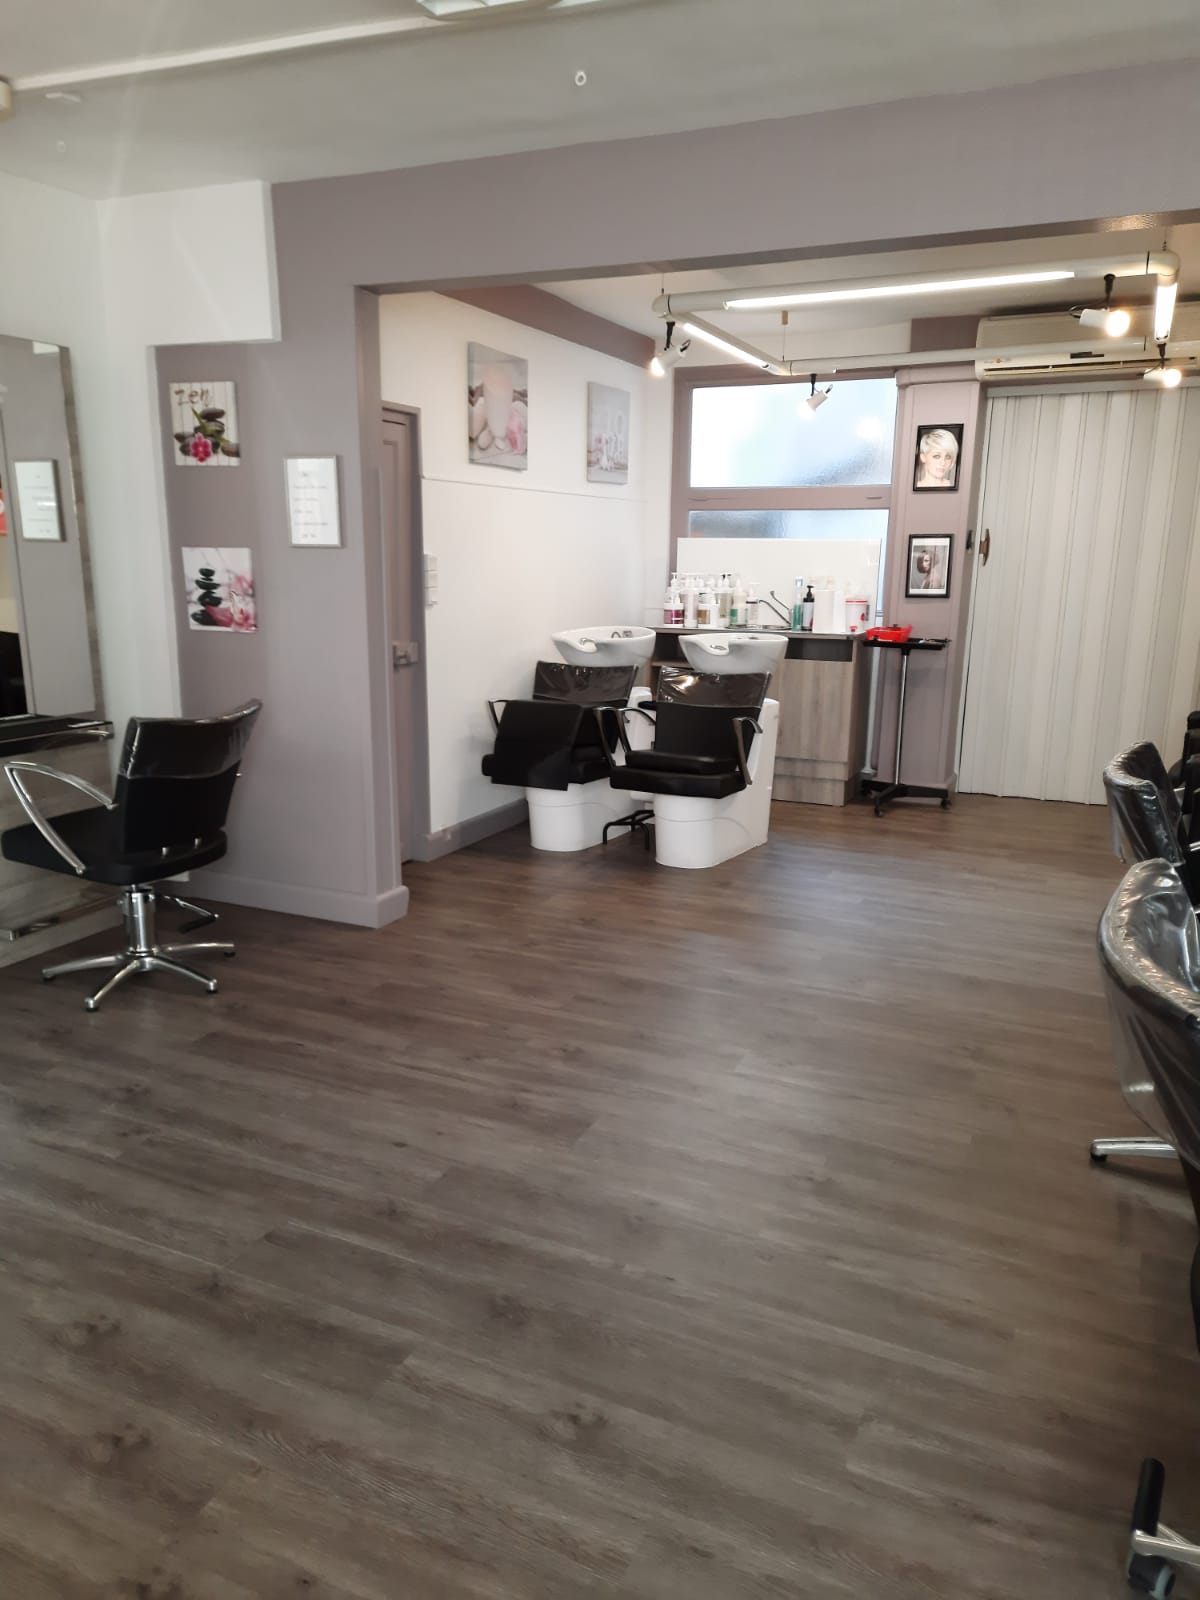 vends salon de coiffure 38 m2 refait à neuf, 4 coiffeuses, possibilité achat murs, appartement disponible à la location à l'étage.